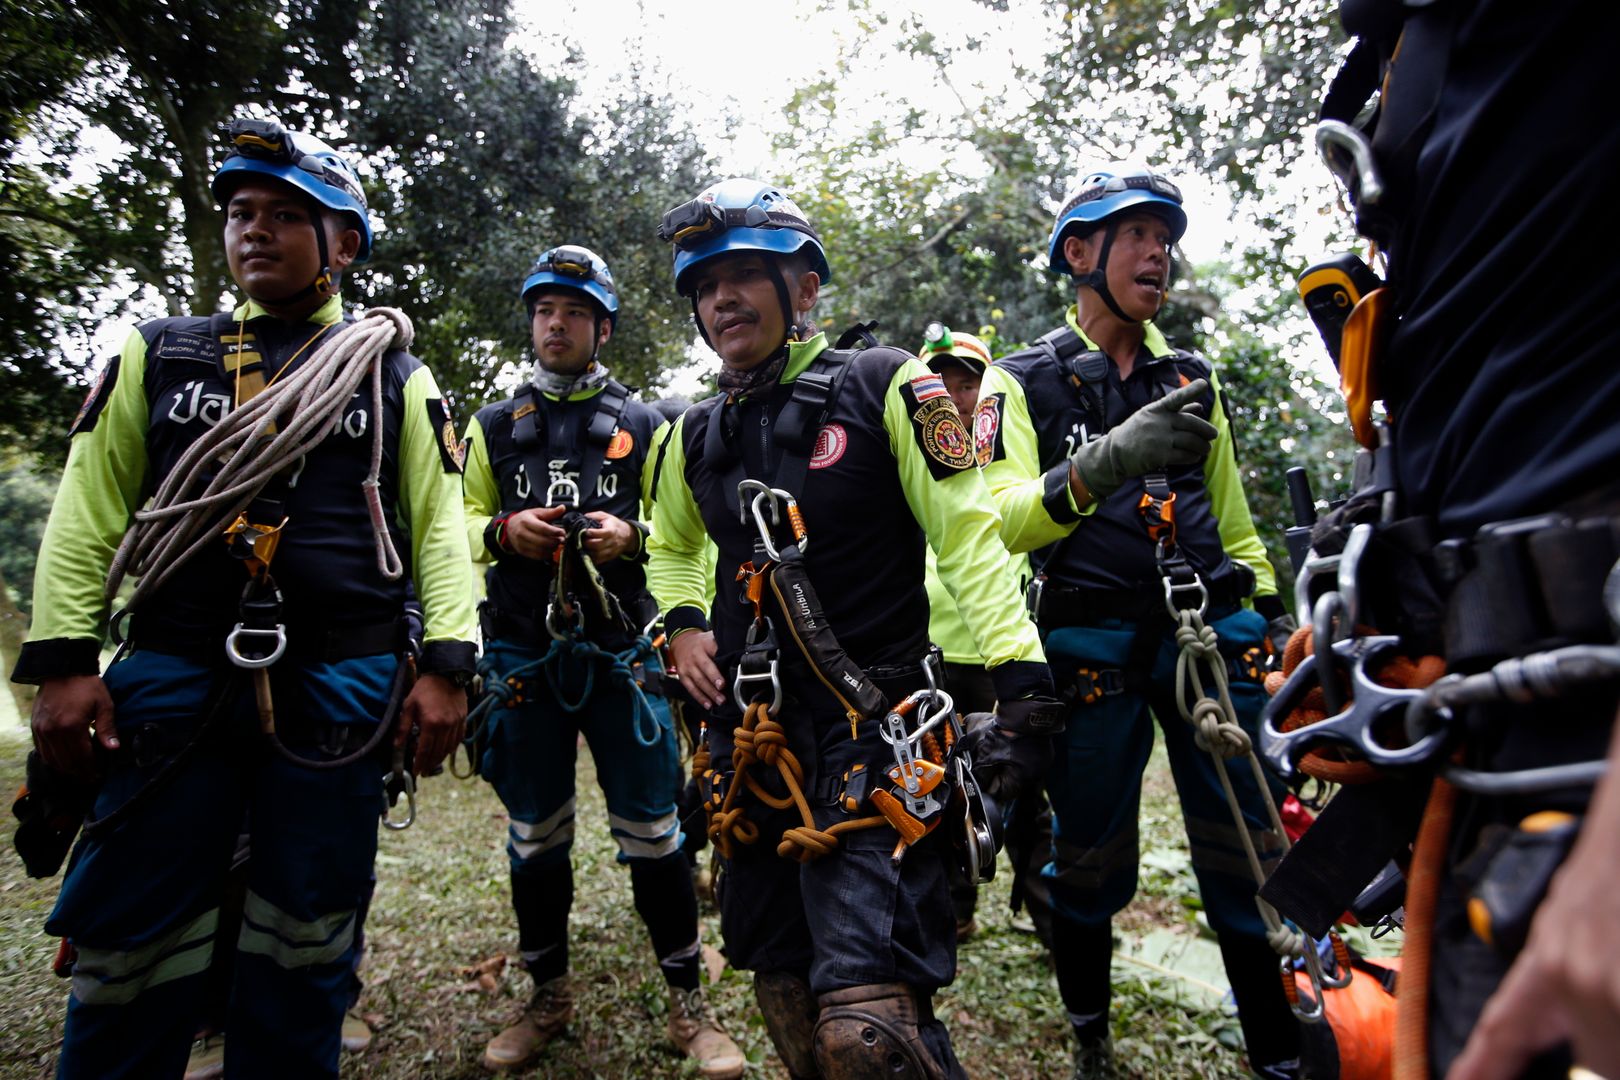 Spektakularną akcję uwalniania chłopców z zalanej jaskini Tham Luang rozpoczęto w niedzielę